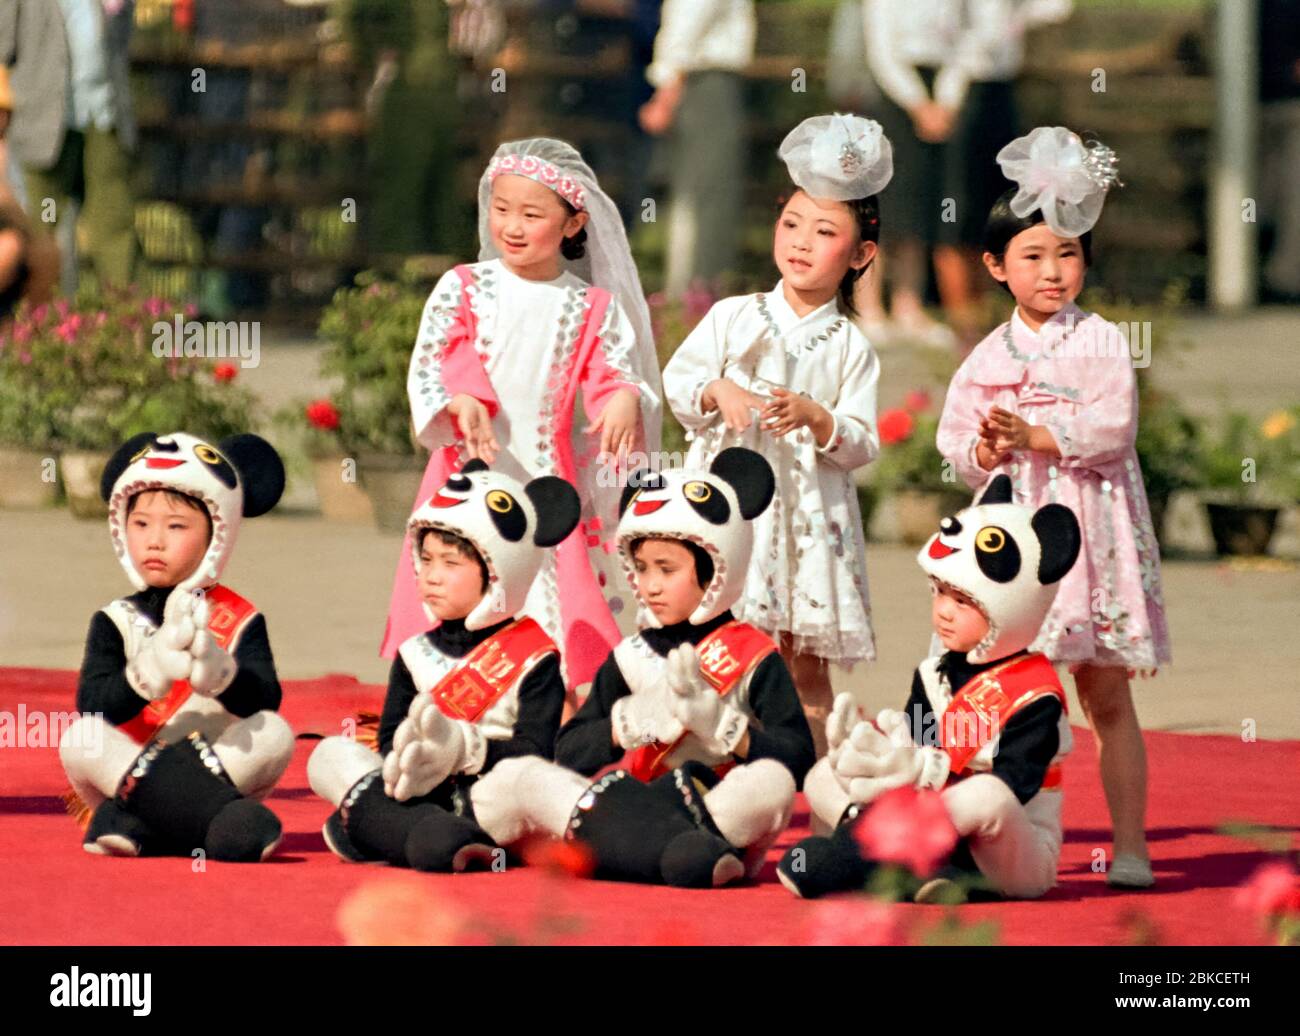 Jeunes enfants chinois vêtus de costumes de Panda lors des célébrations de la Journée internationale des enfants, qui se sont tenues sur la place Tiananmen le 2 juin 1990 à Beijing, en Chine. L'événement a été organisé comme une distraction à l'occasion de l'anniversaire du massacre qui a tué des manifestants pour la démocratie dirigés par des étudiants le 4 juin 1989. Banque D'Images